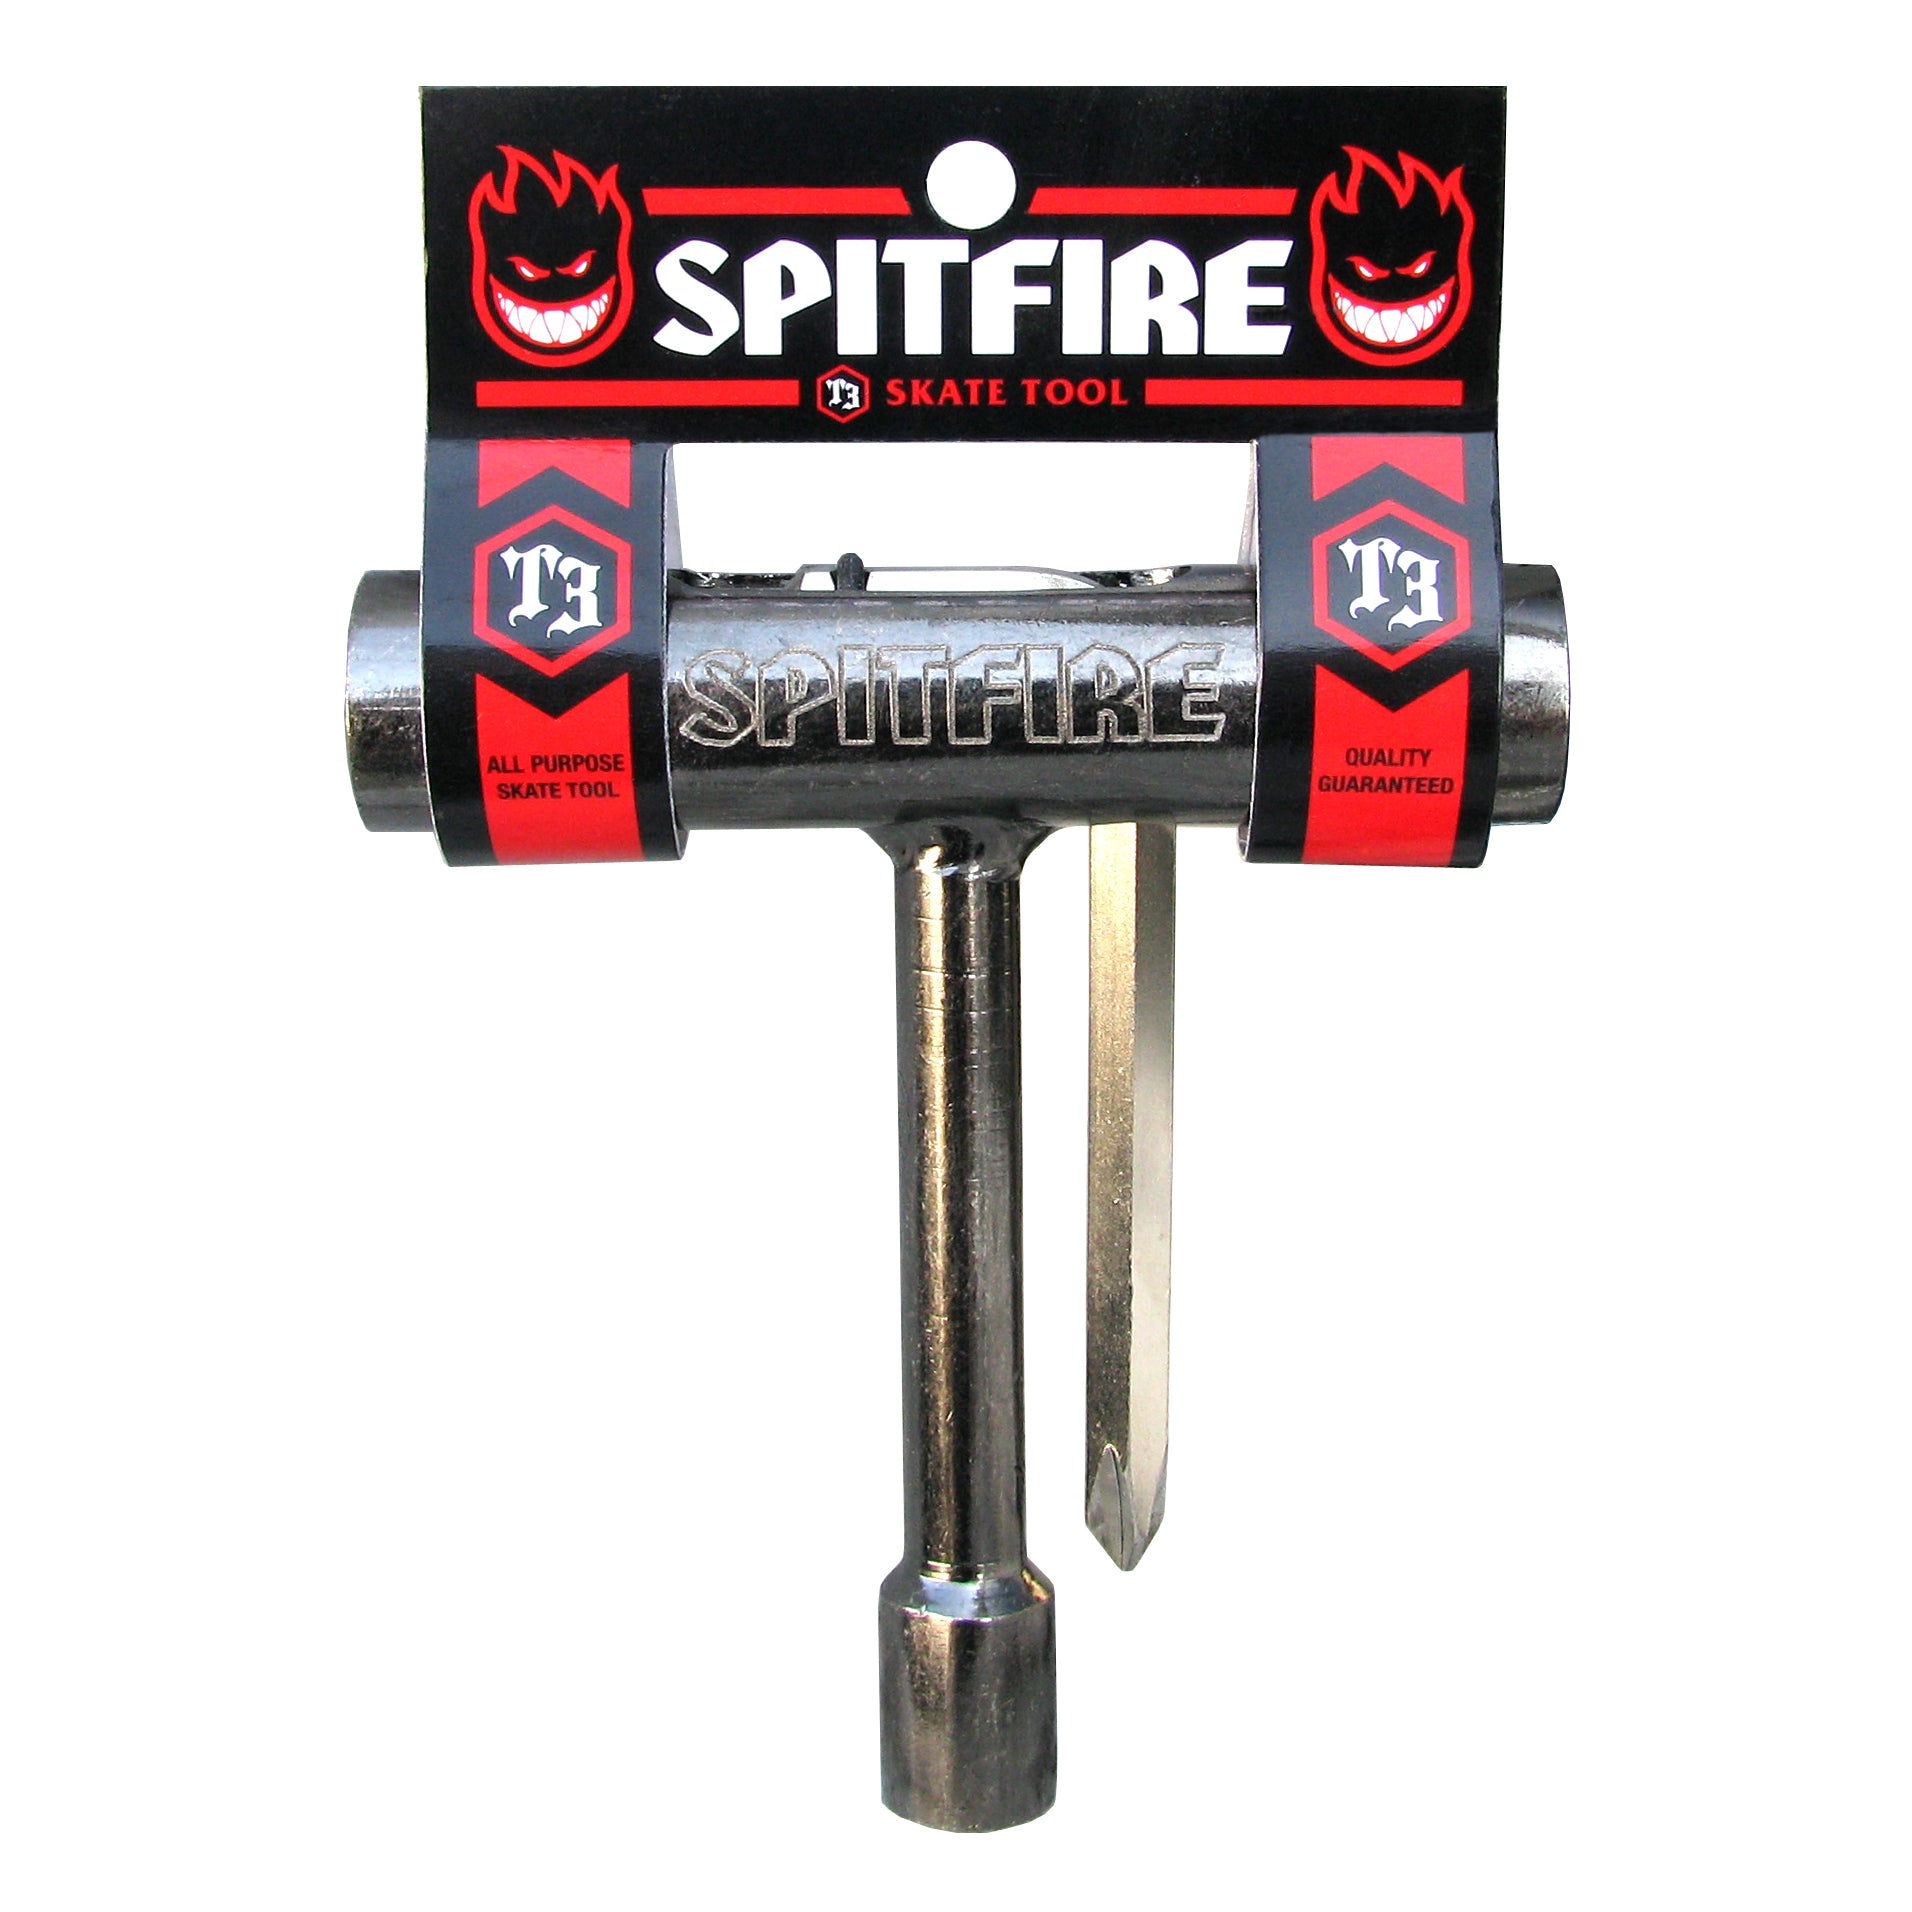 Spitfire - Skate Tool T3 (assembly key)